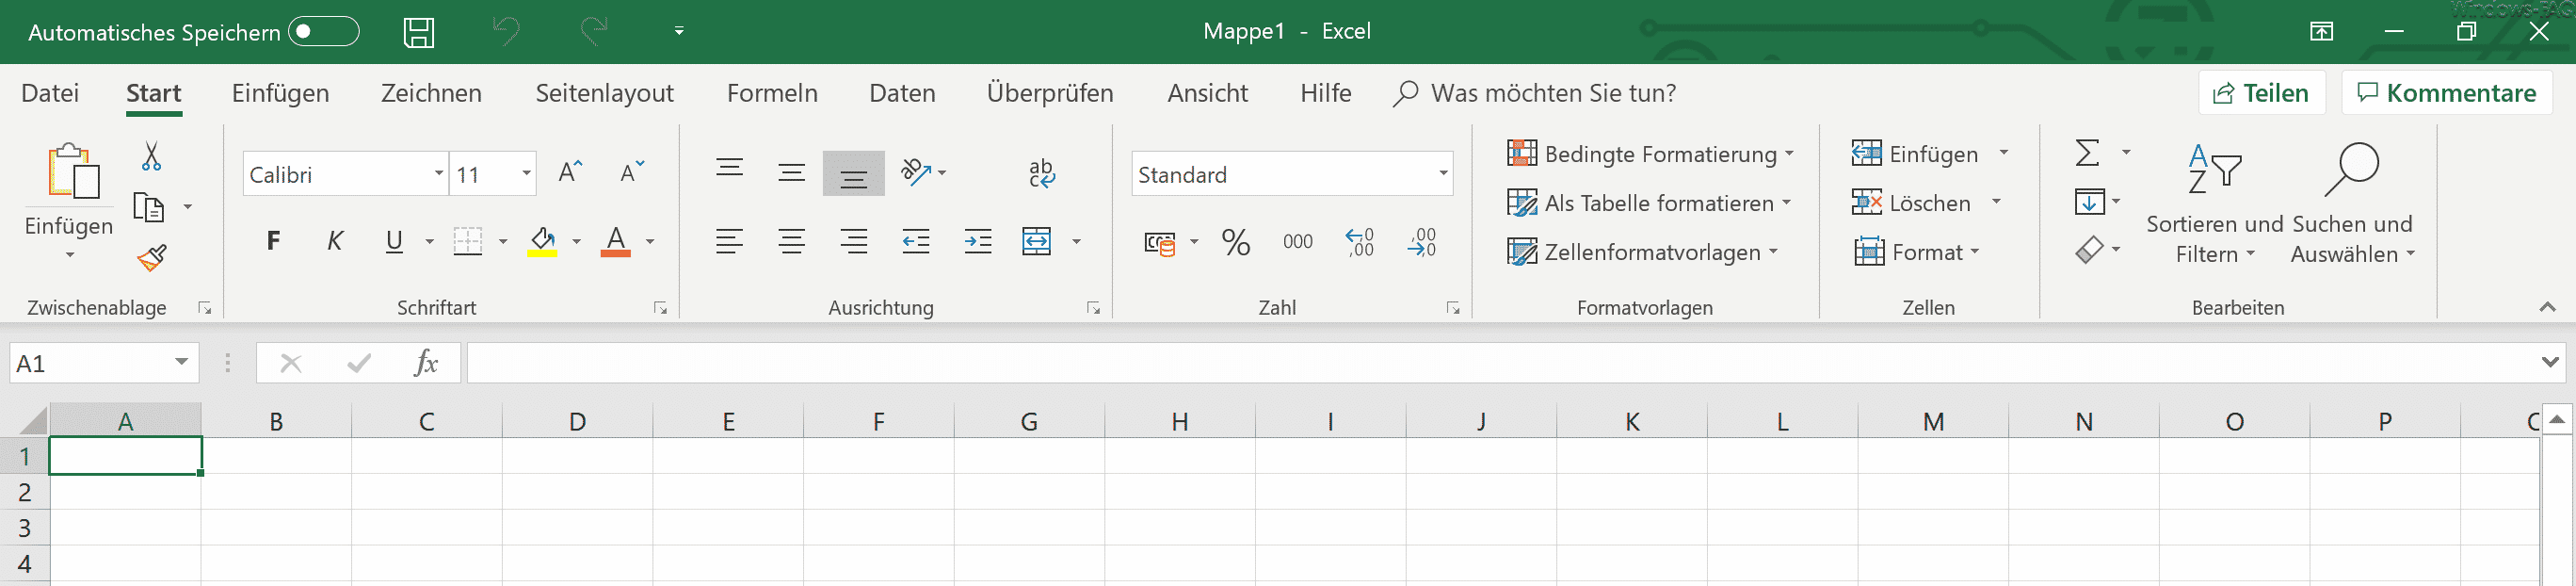 Excel 365 neues Design